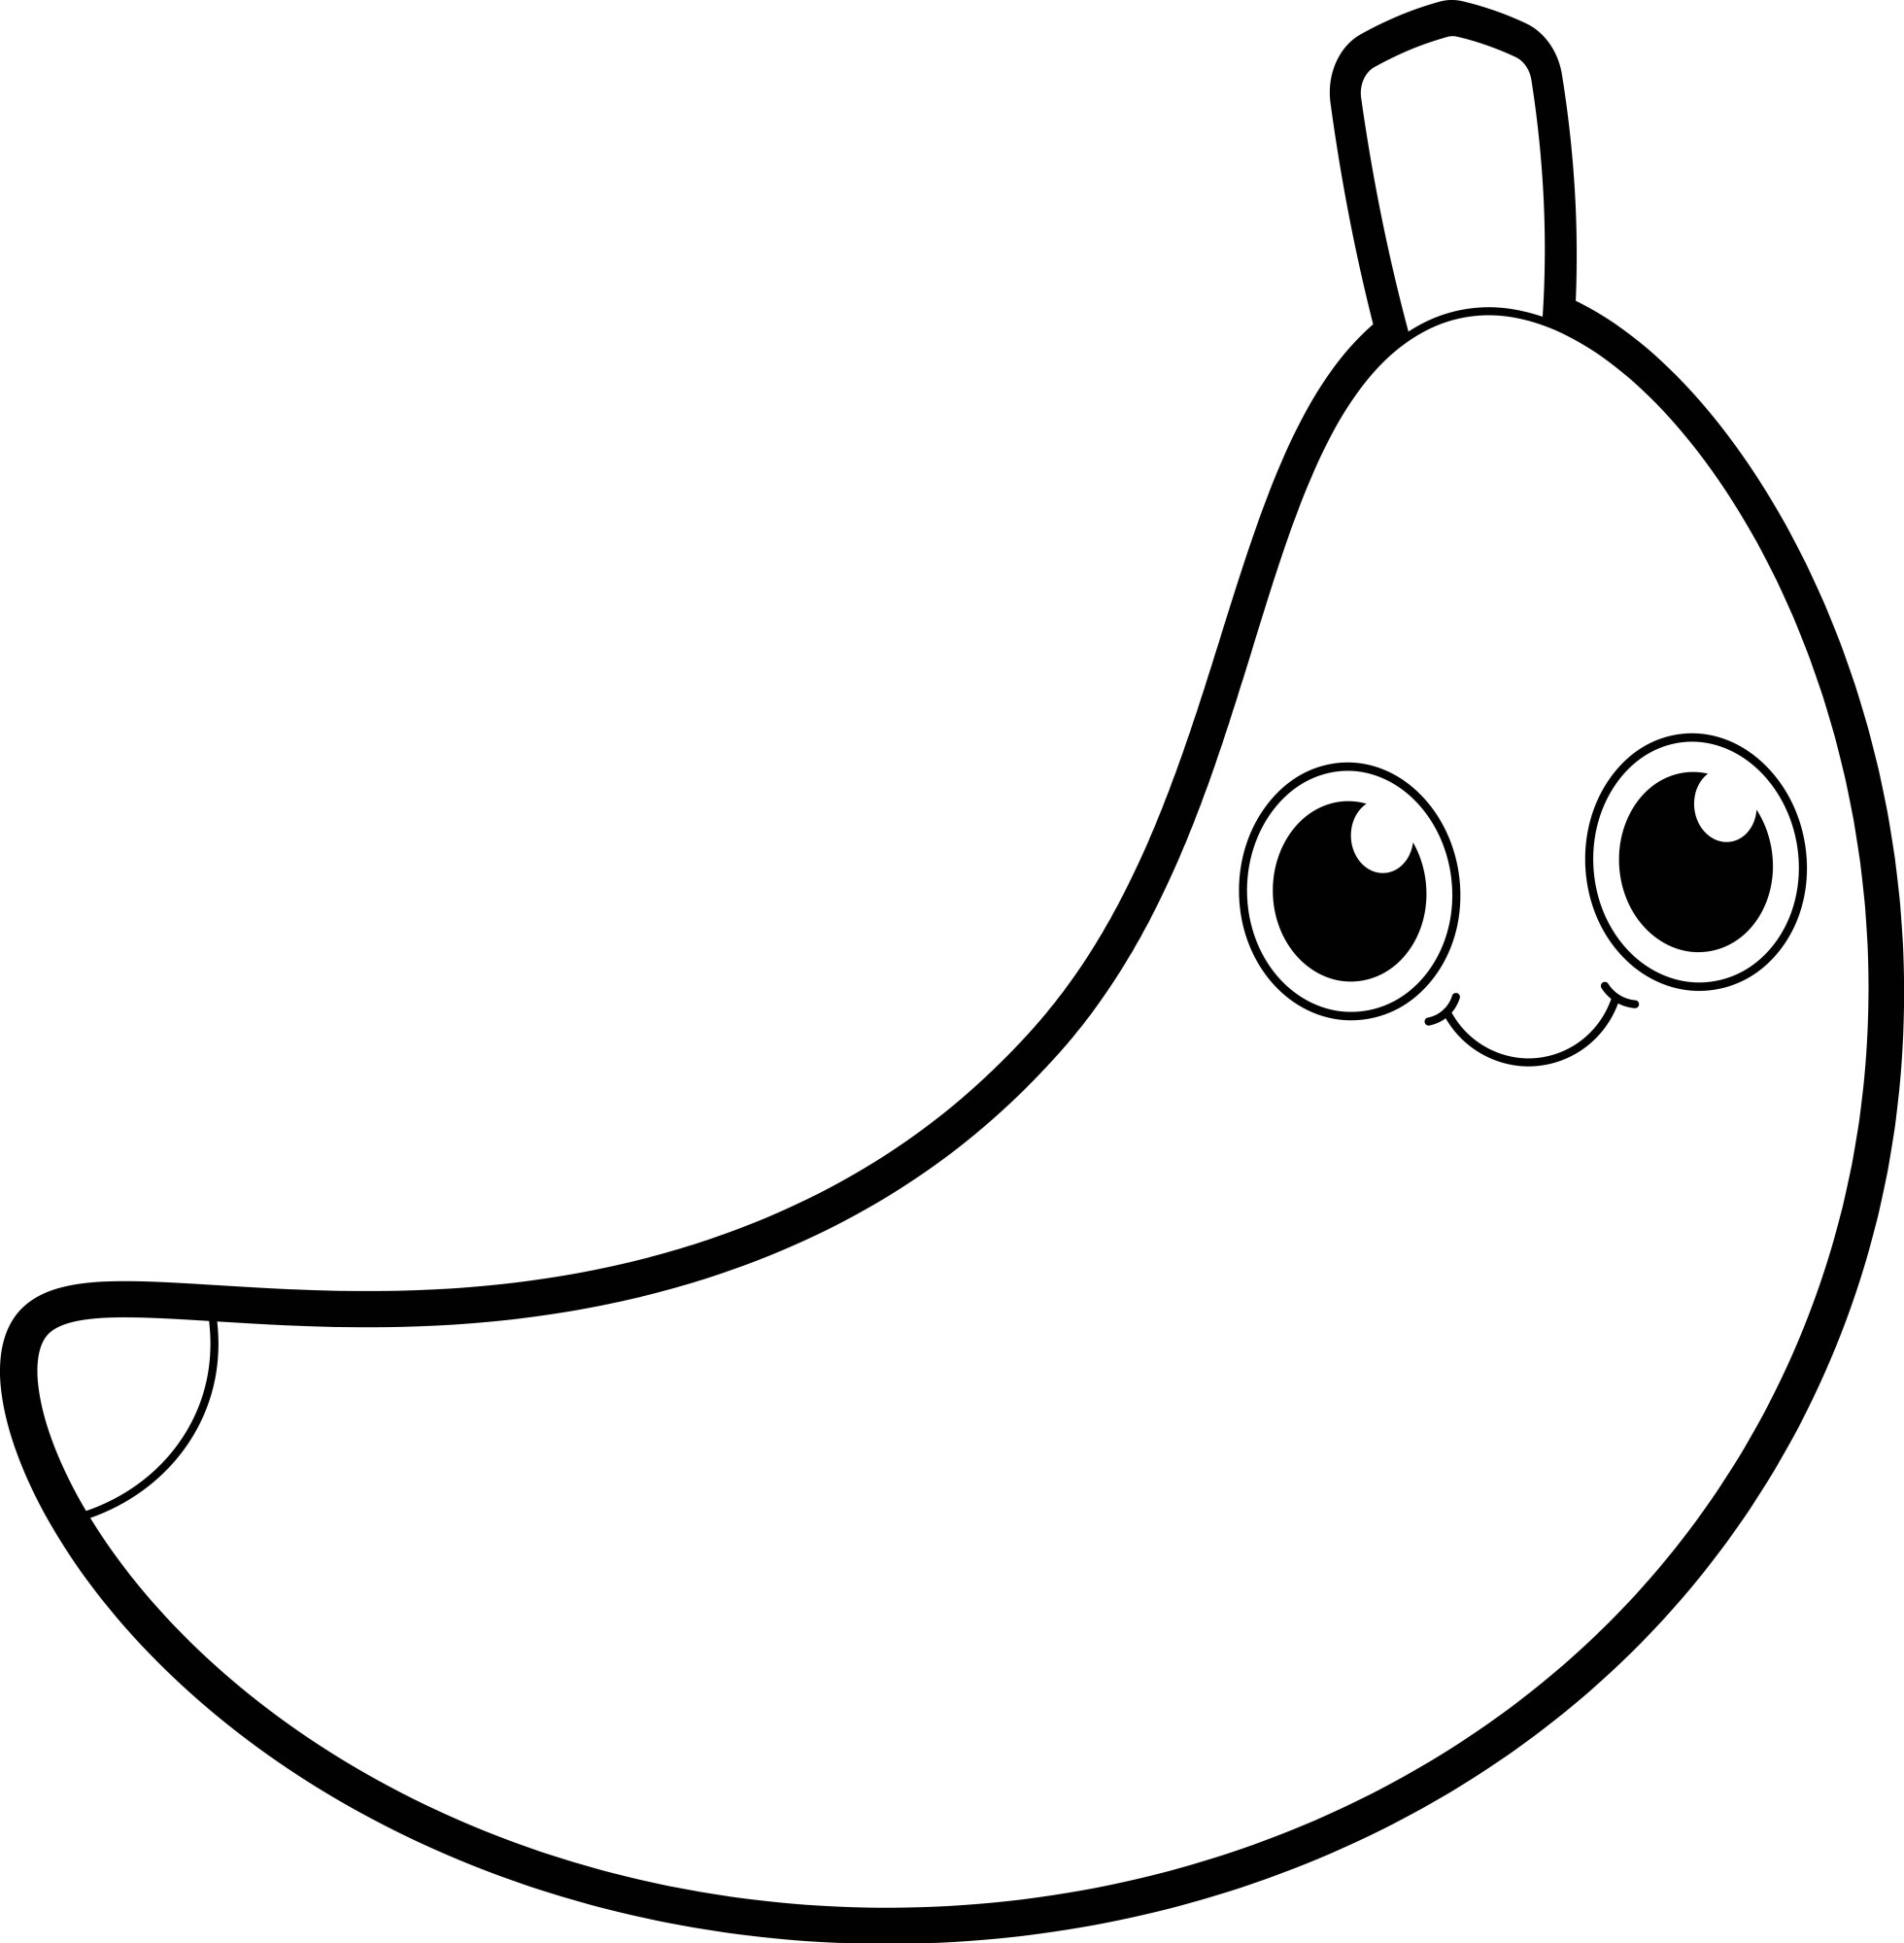 Раскраска для детей: желтый банан с глазами улыбается